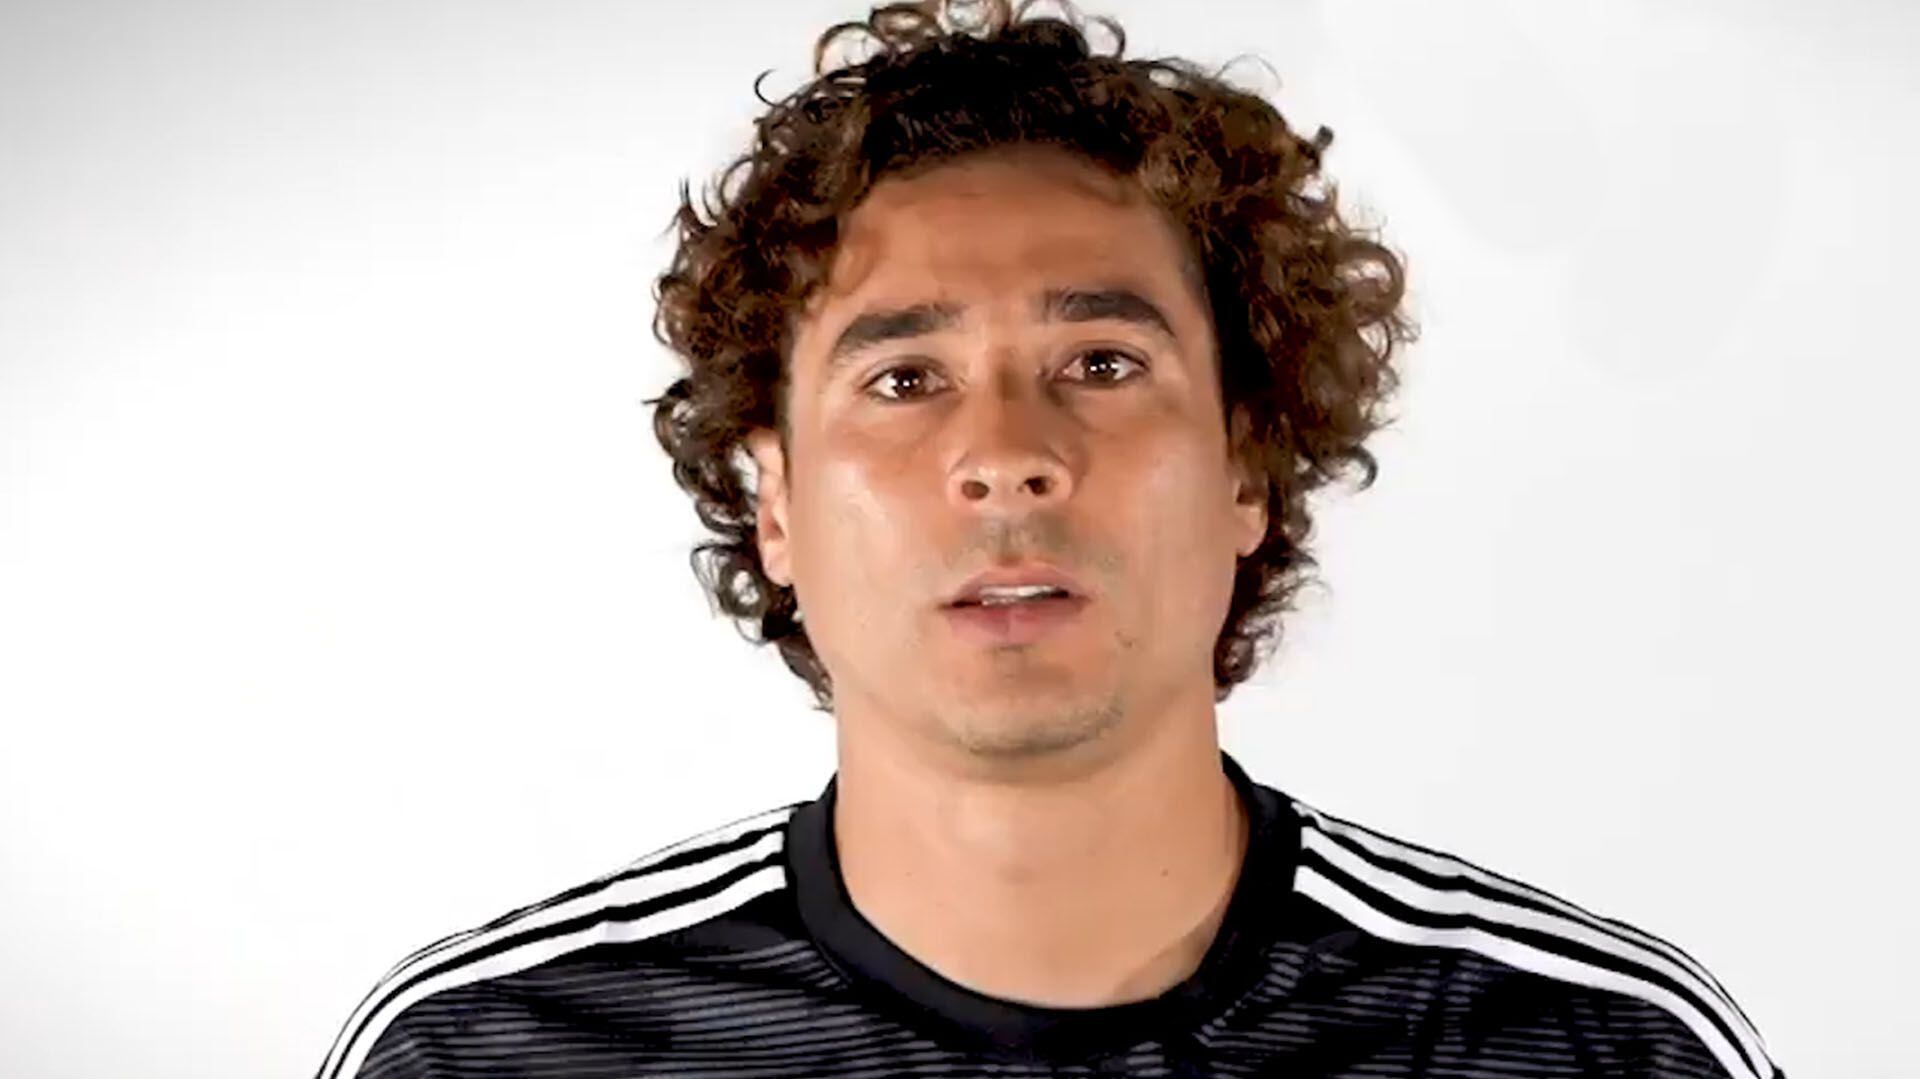 Guillermo Ochoa, uno de los elementos más importantes de la selección mexicana fue uno de los protagonistas del video. (Foto: Captura de pantalla)